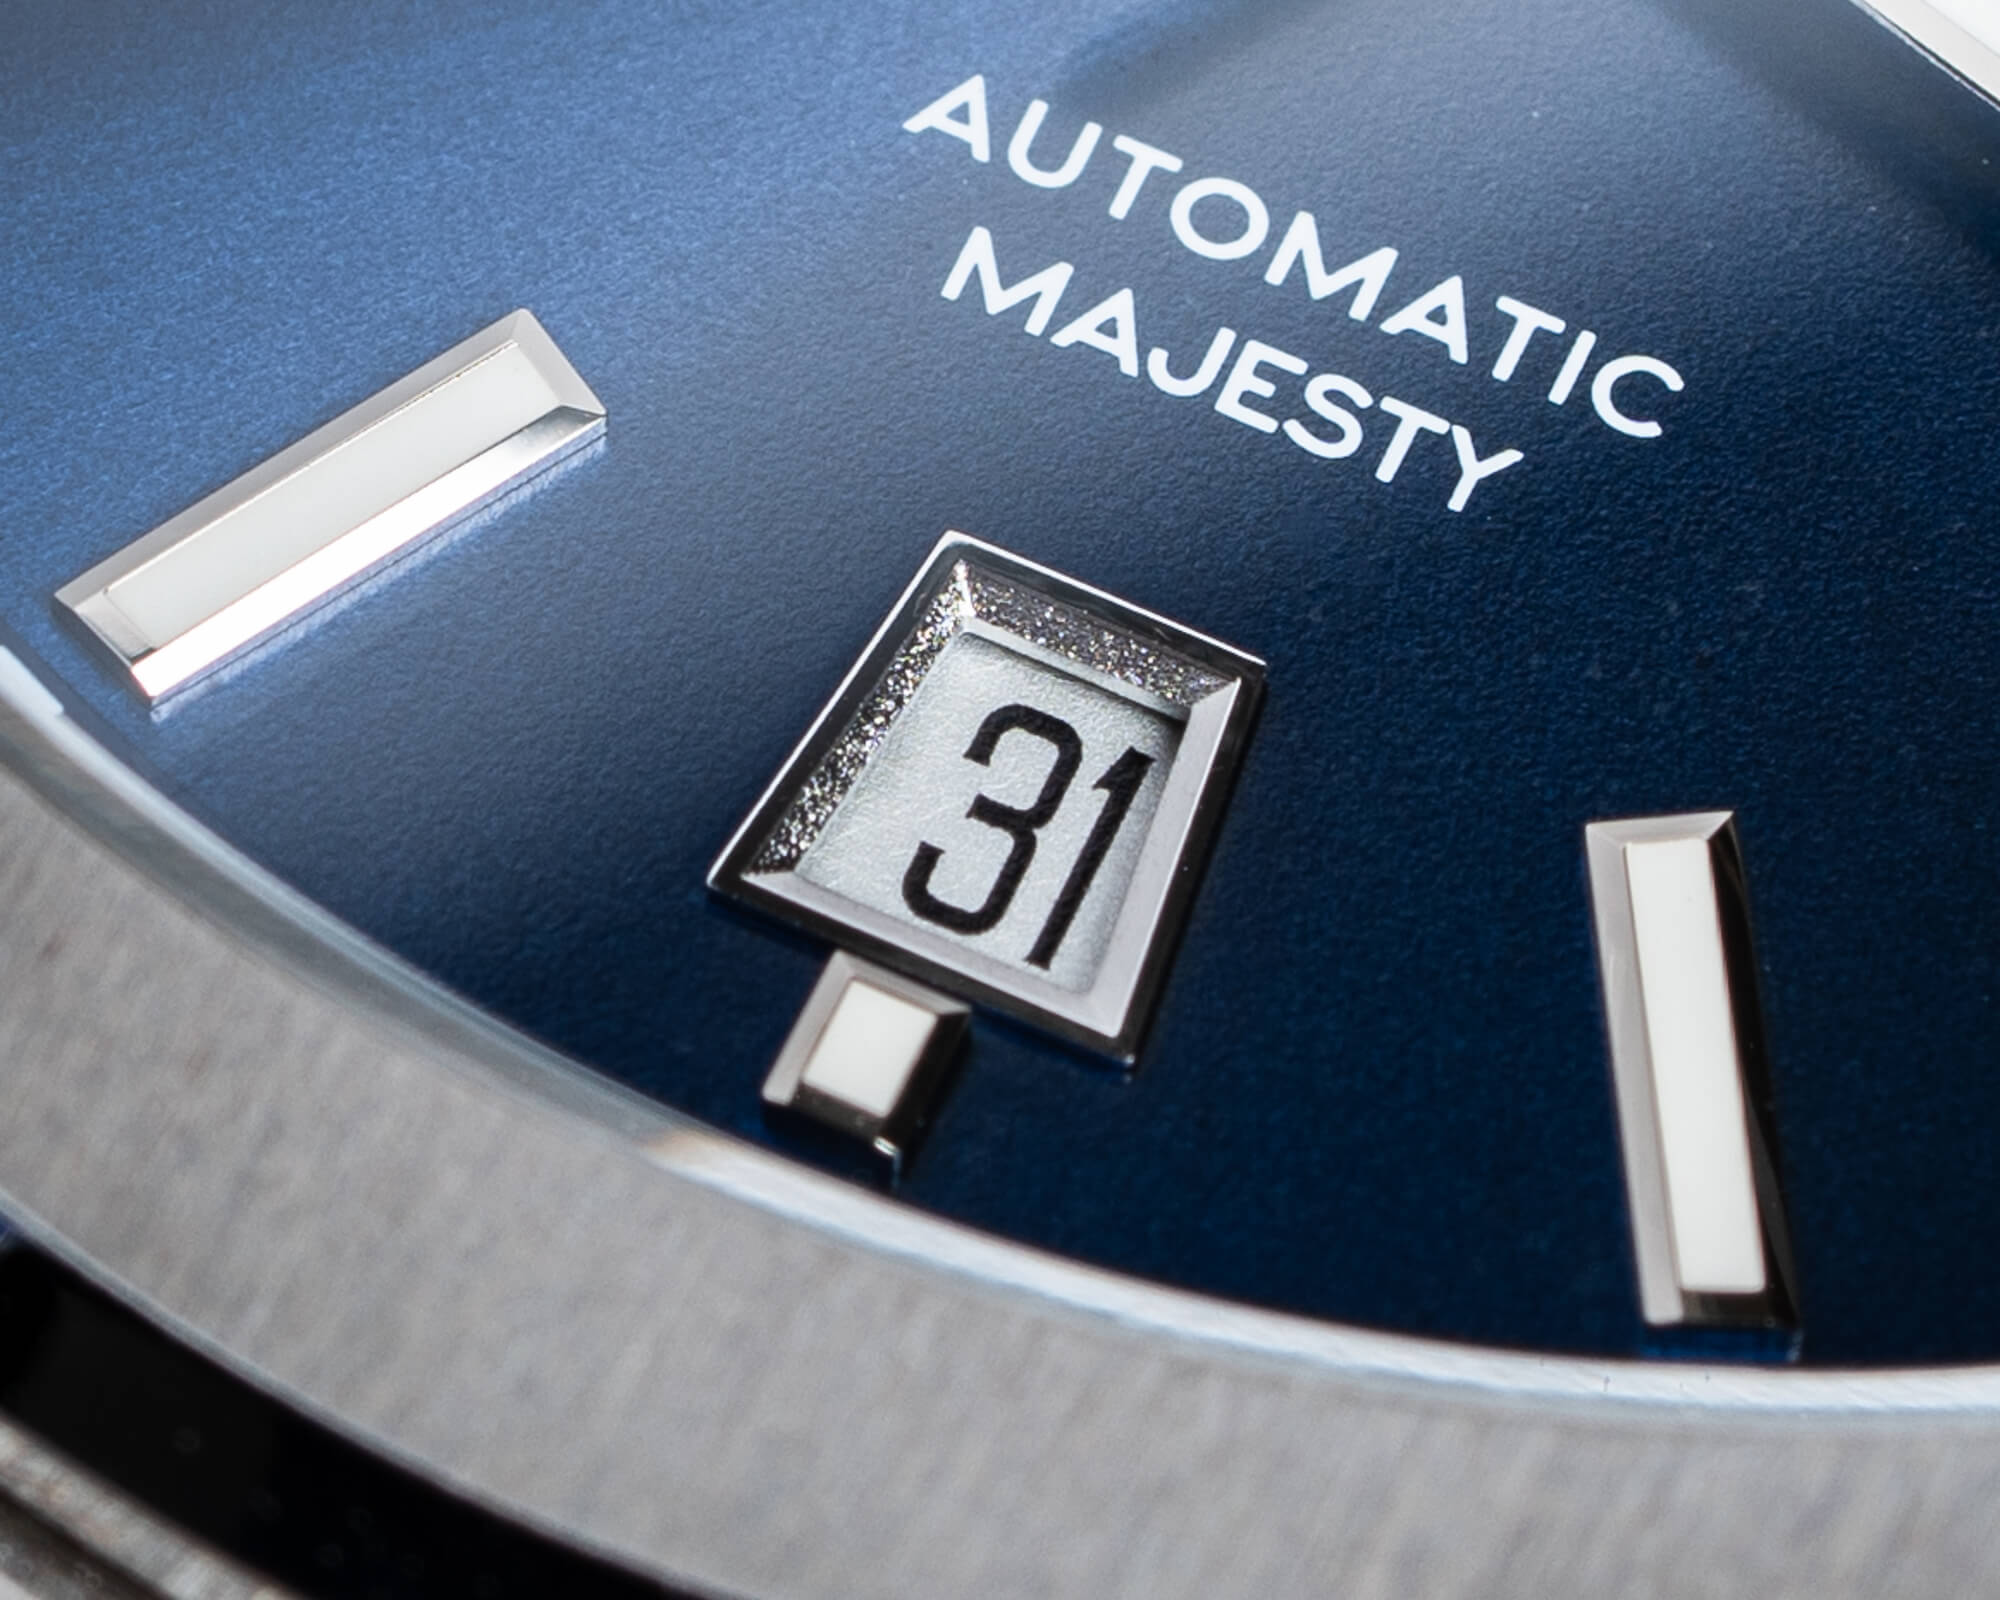 Автоматические часы Karl-Leimon Majesty - образец японского мастерства